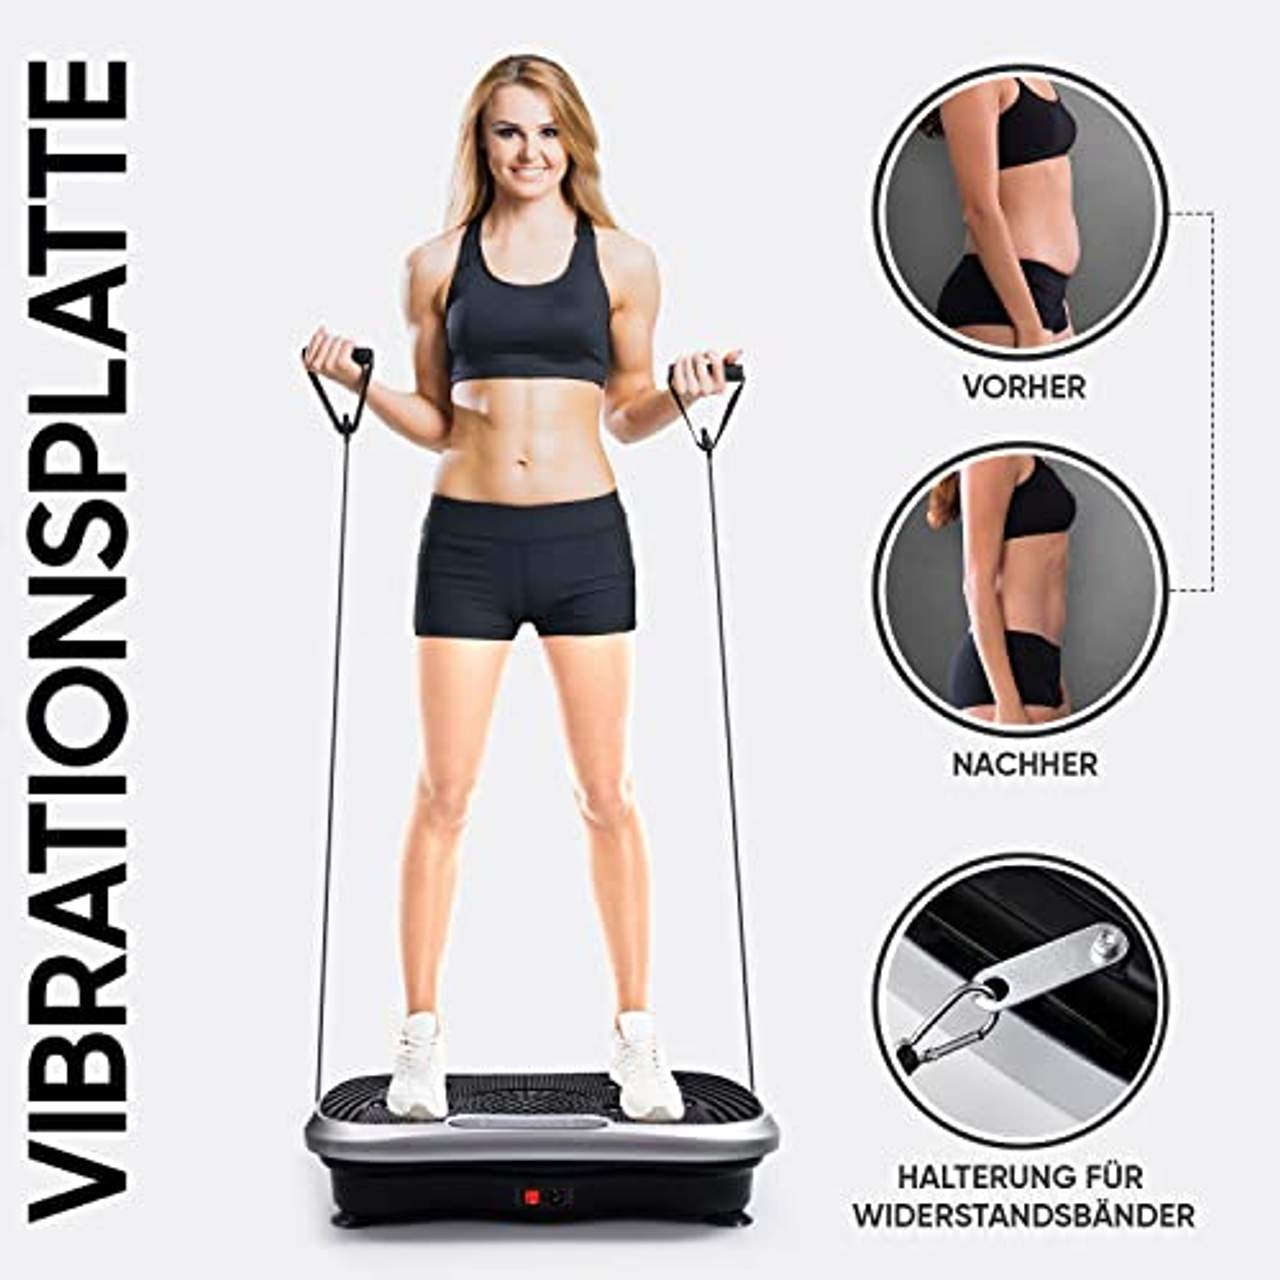 WeightWorld Vibrationsplatte Ganzkörpertraining & Fitness